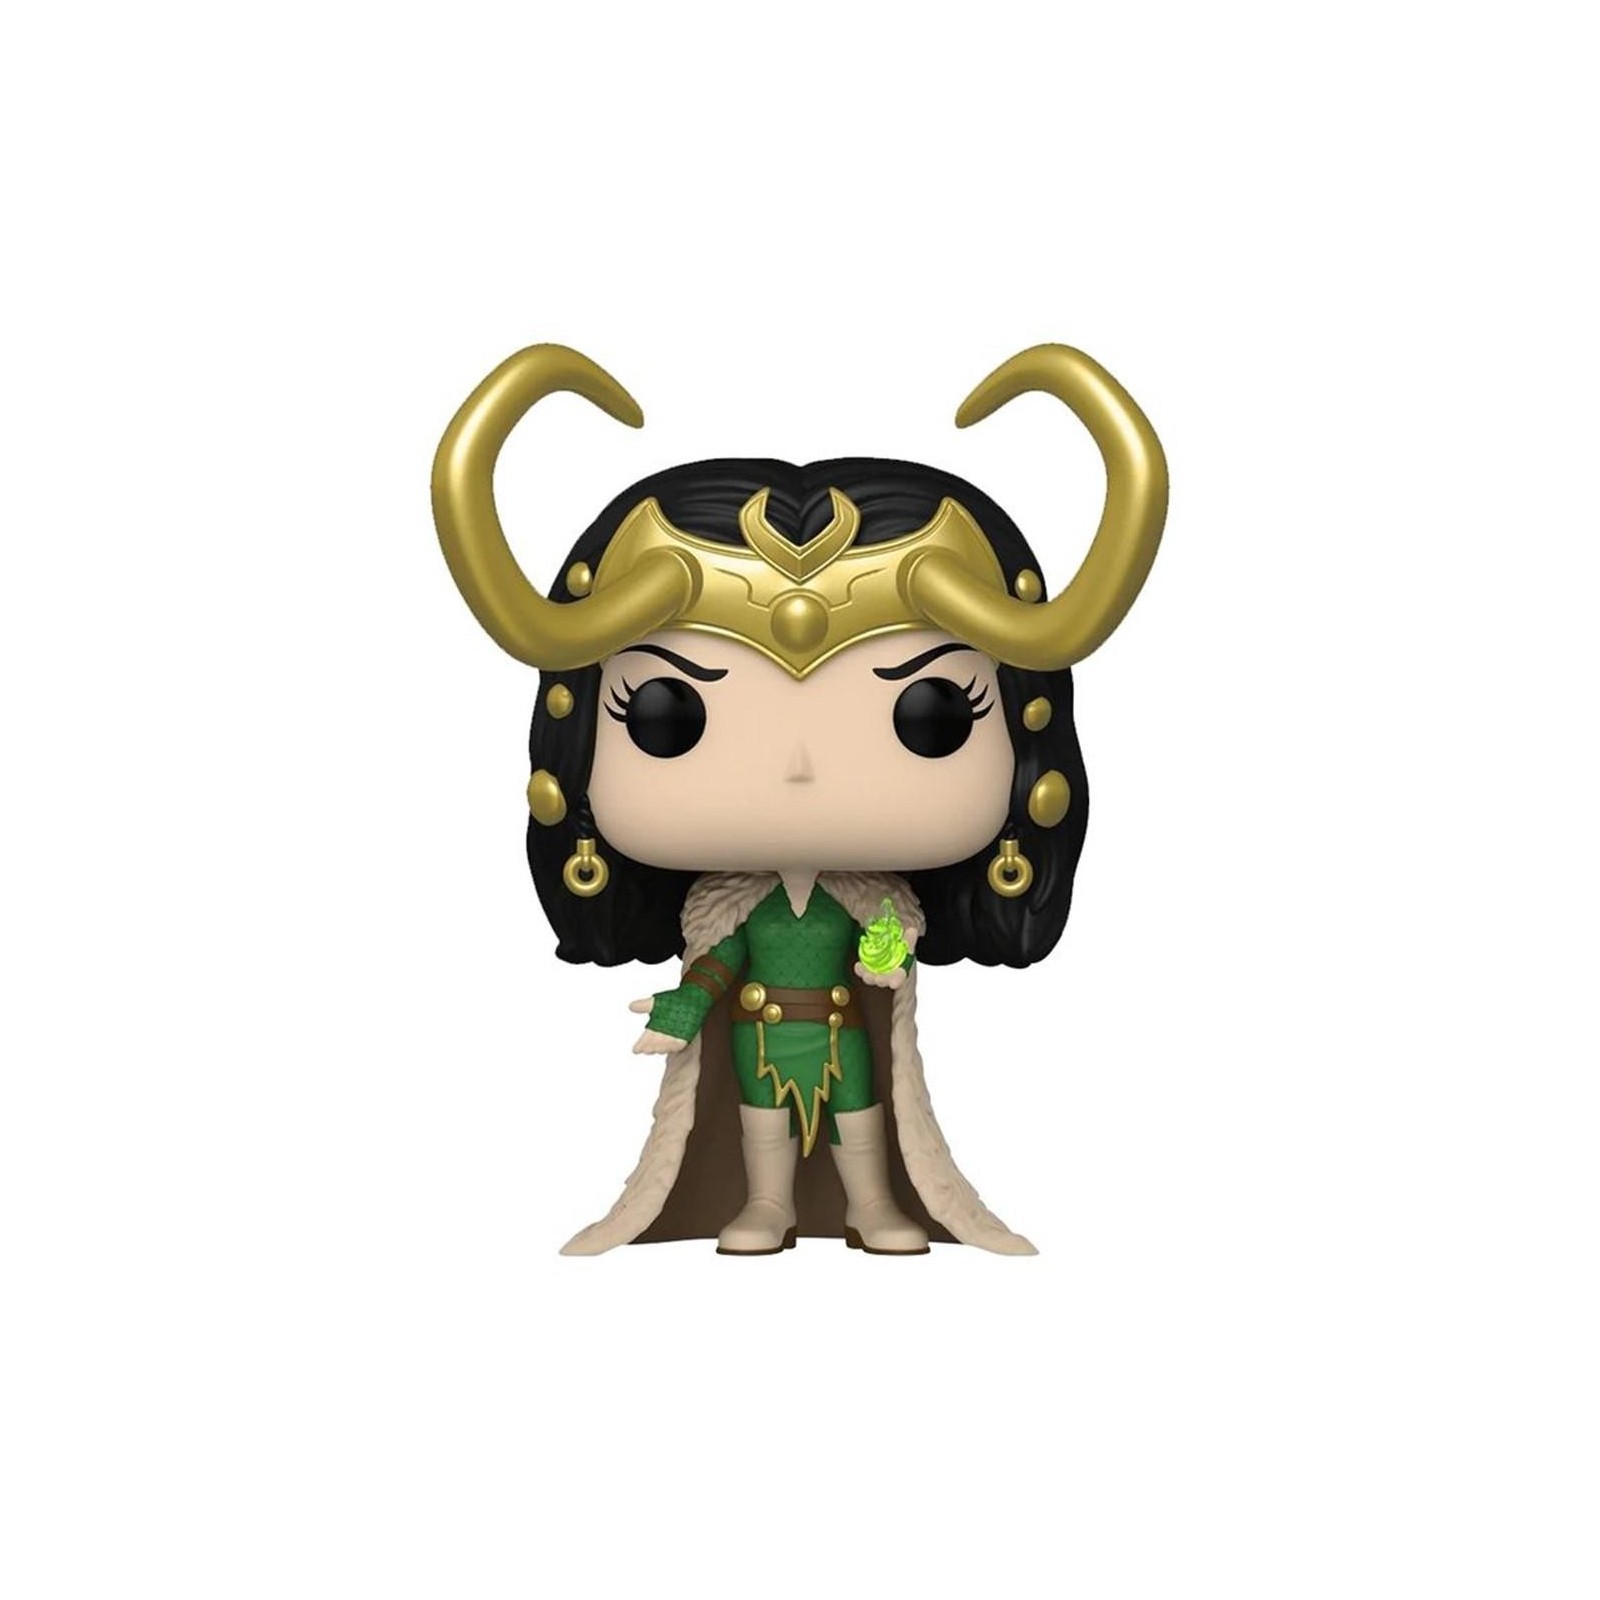 Figura Pop Marvel Lady Loki Exclusive